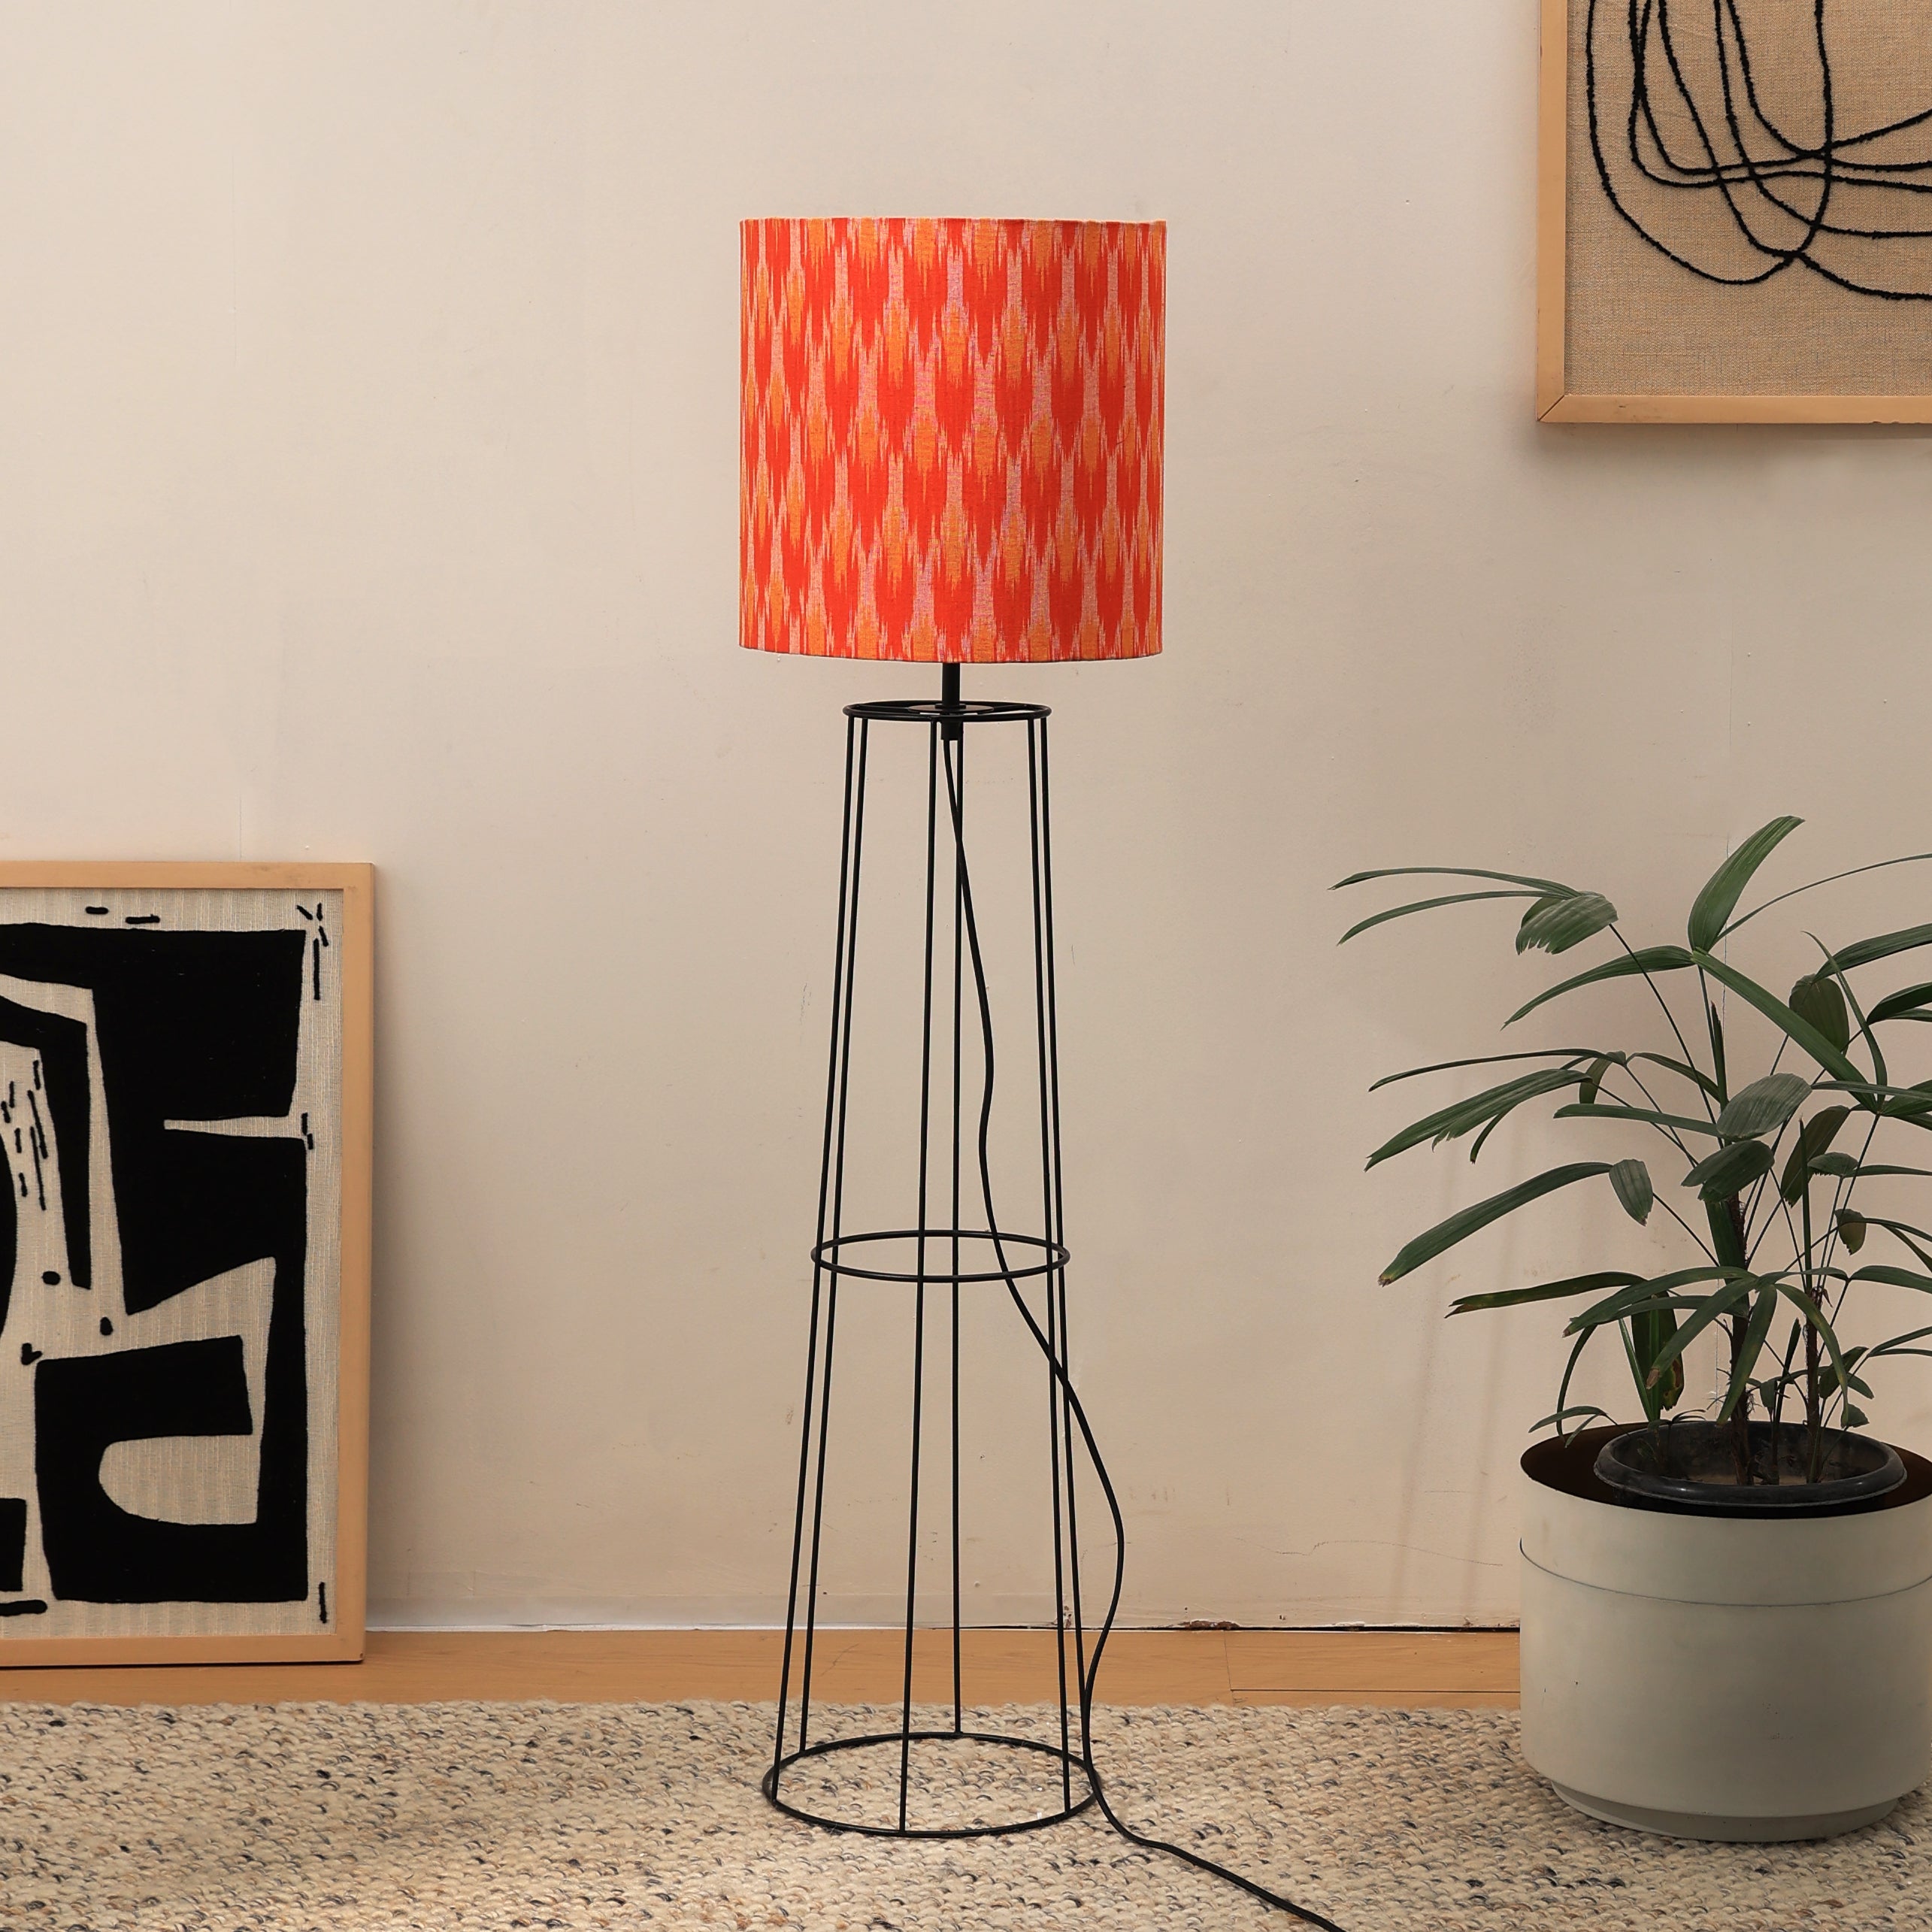 IKKAT Floor Lamp - Ikkat Fabric, Floor Lamp, Indian and Scandinavia fusion, modern lighting, trending floor lamp